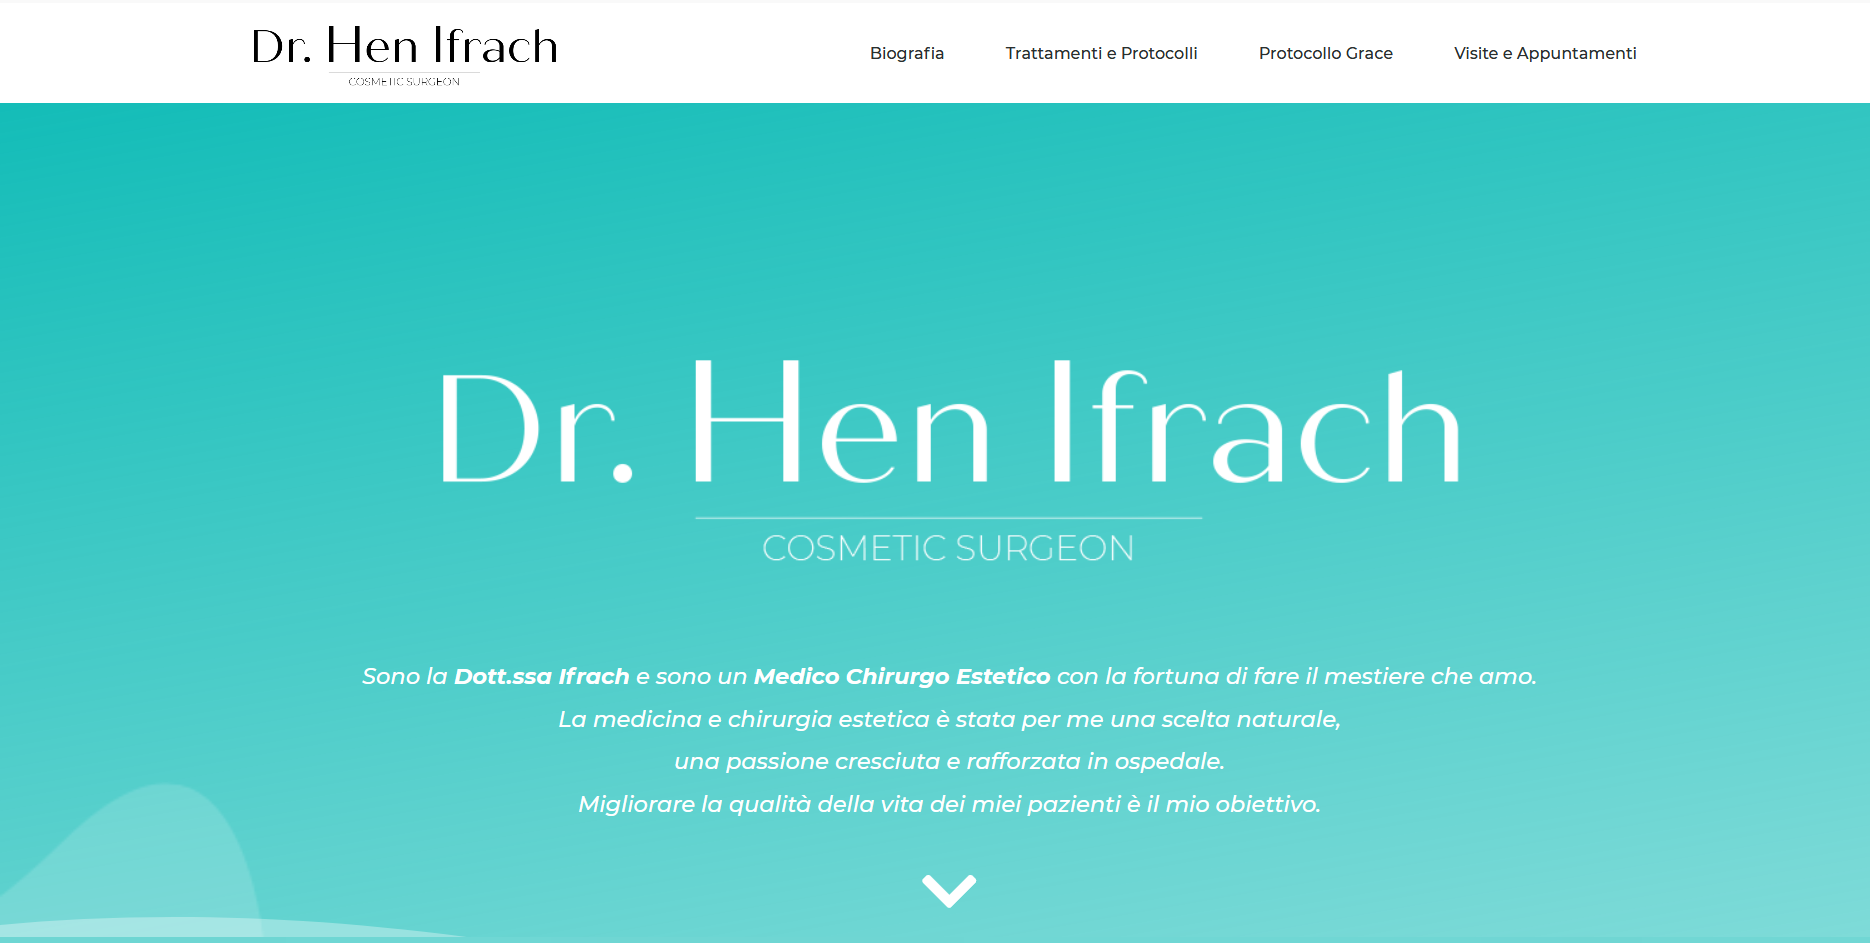 Dr. Hen Ifrach